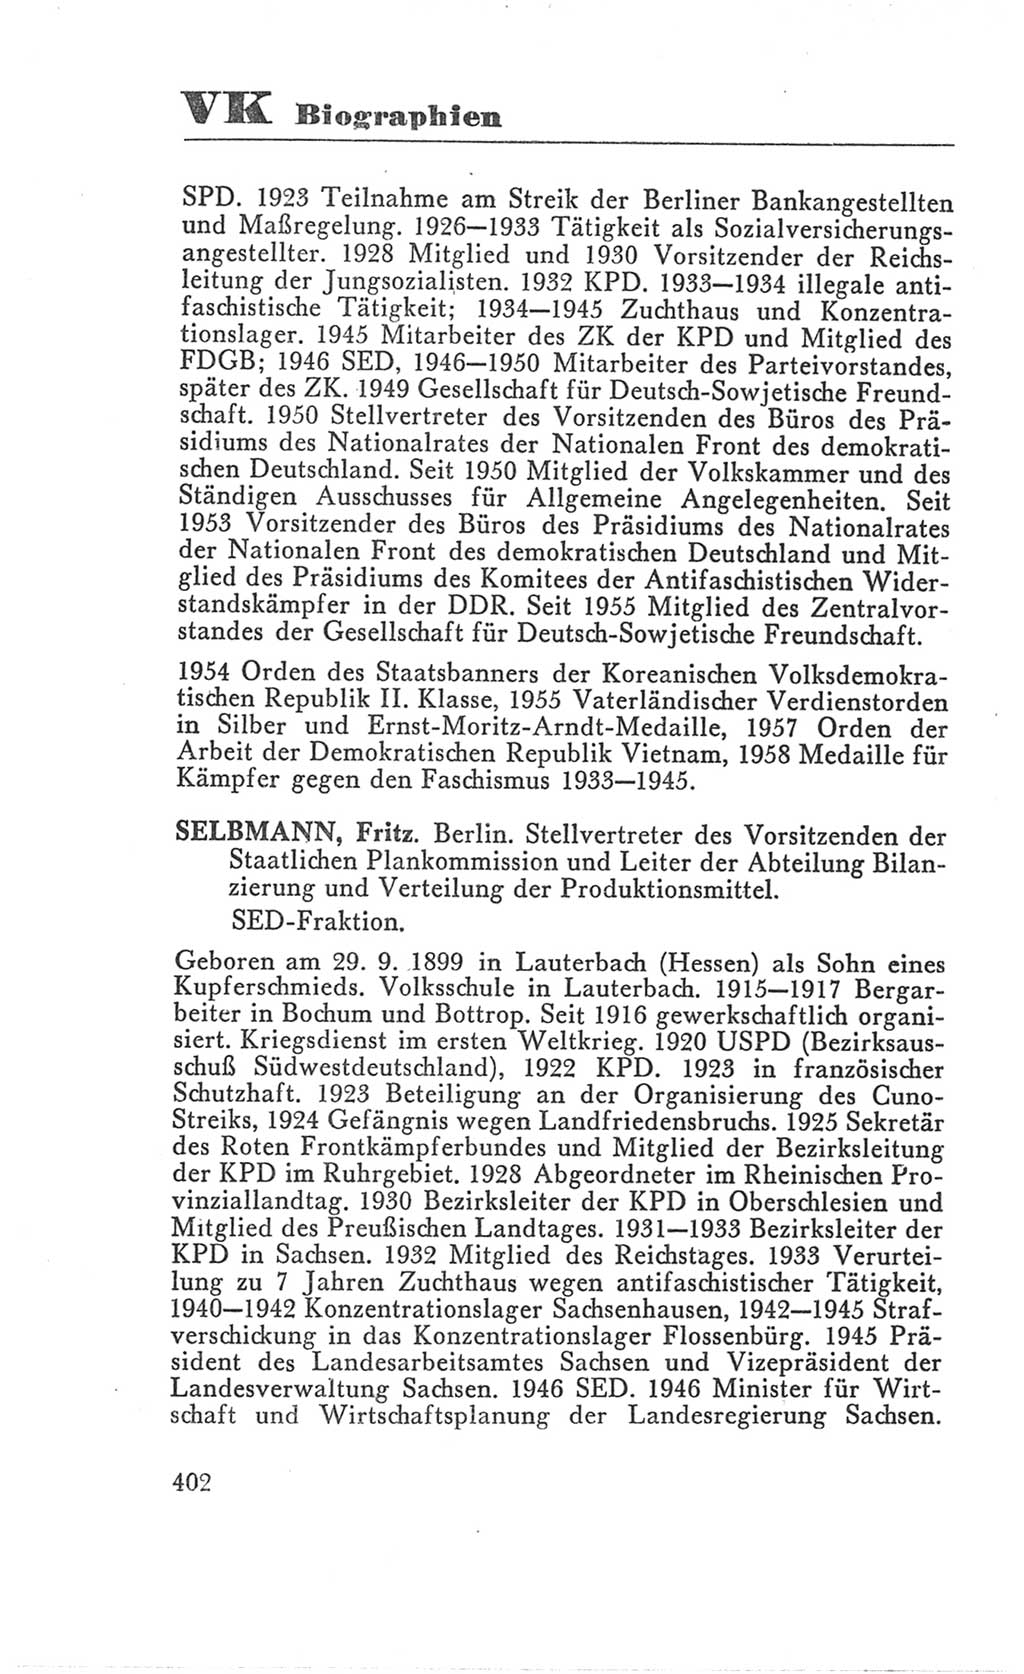 Handbuch der Volkskammer (VK) der Deutschen Demokratischen Republik (DDR), 3. Wahlperiode 1958-1963, Seite 402 (Hdb. VK. DDR 3. WP. 1958-1963, S. 402)